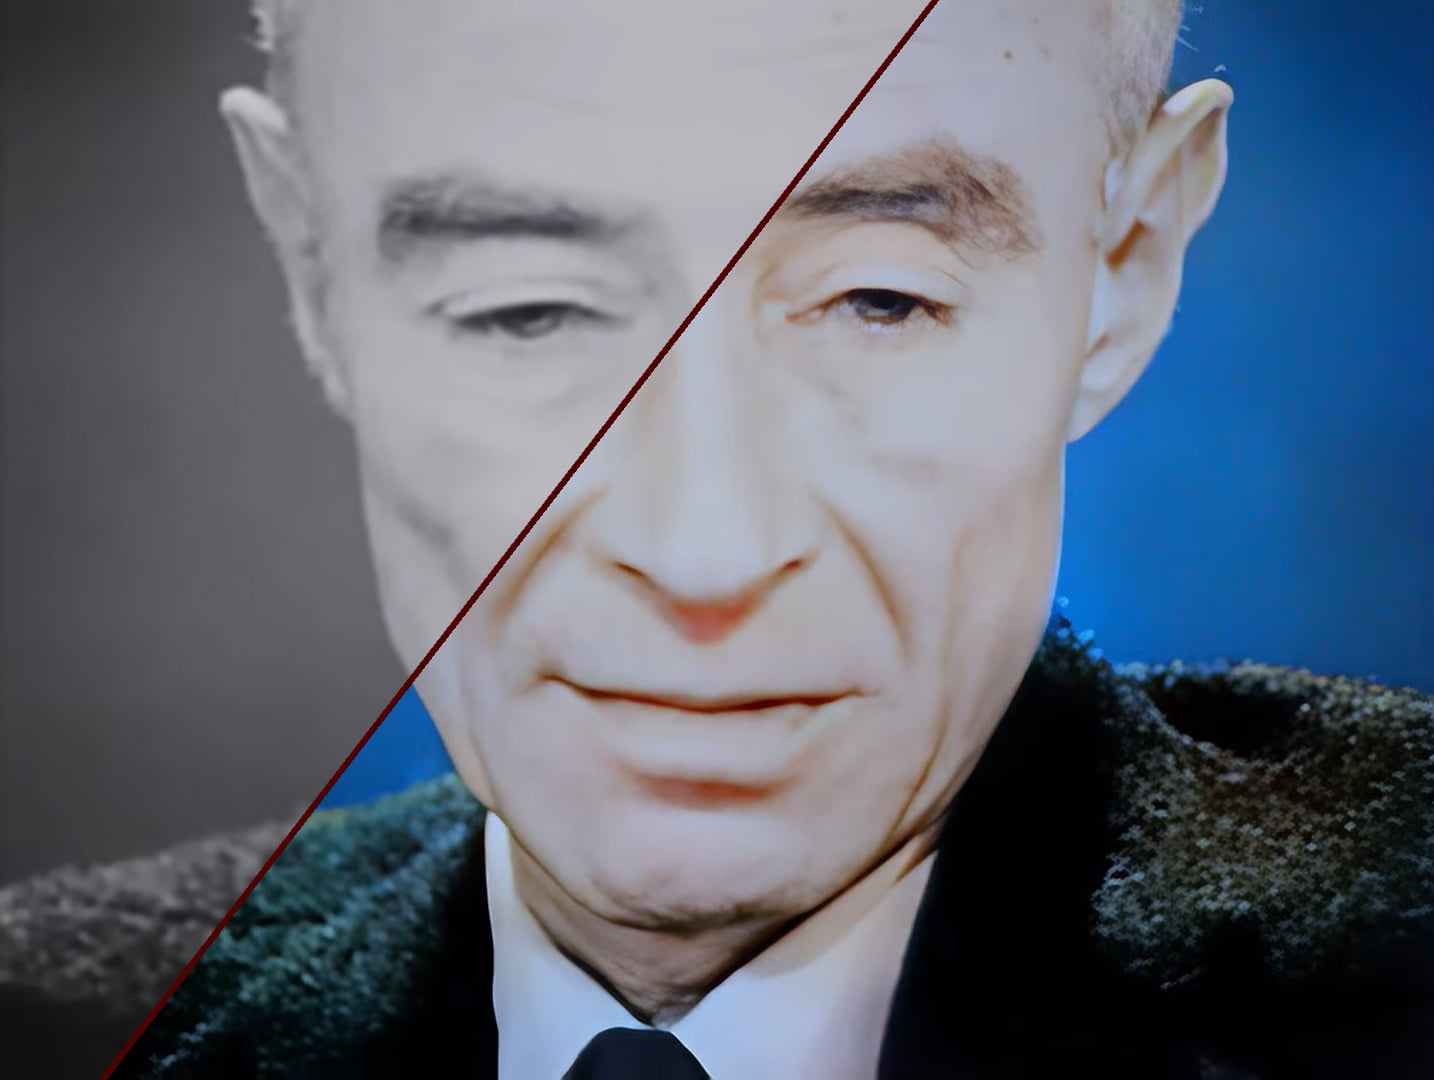 Słynne „Stałem się śmiercią, niszczycielem światów” Oppenheimera w 4K i kolorze. To nagranie trzeba zobaczyć